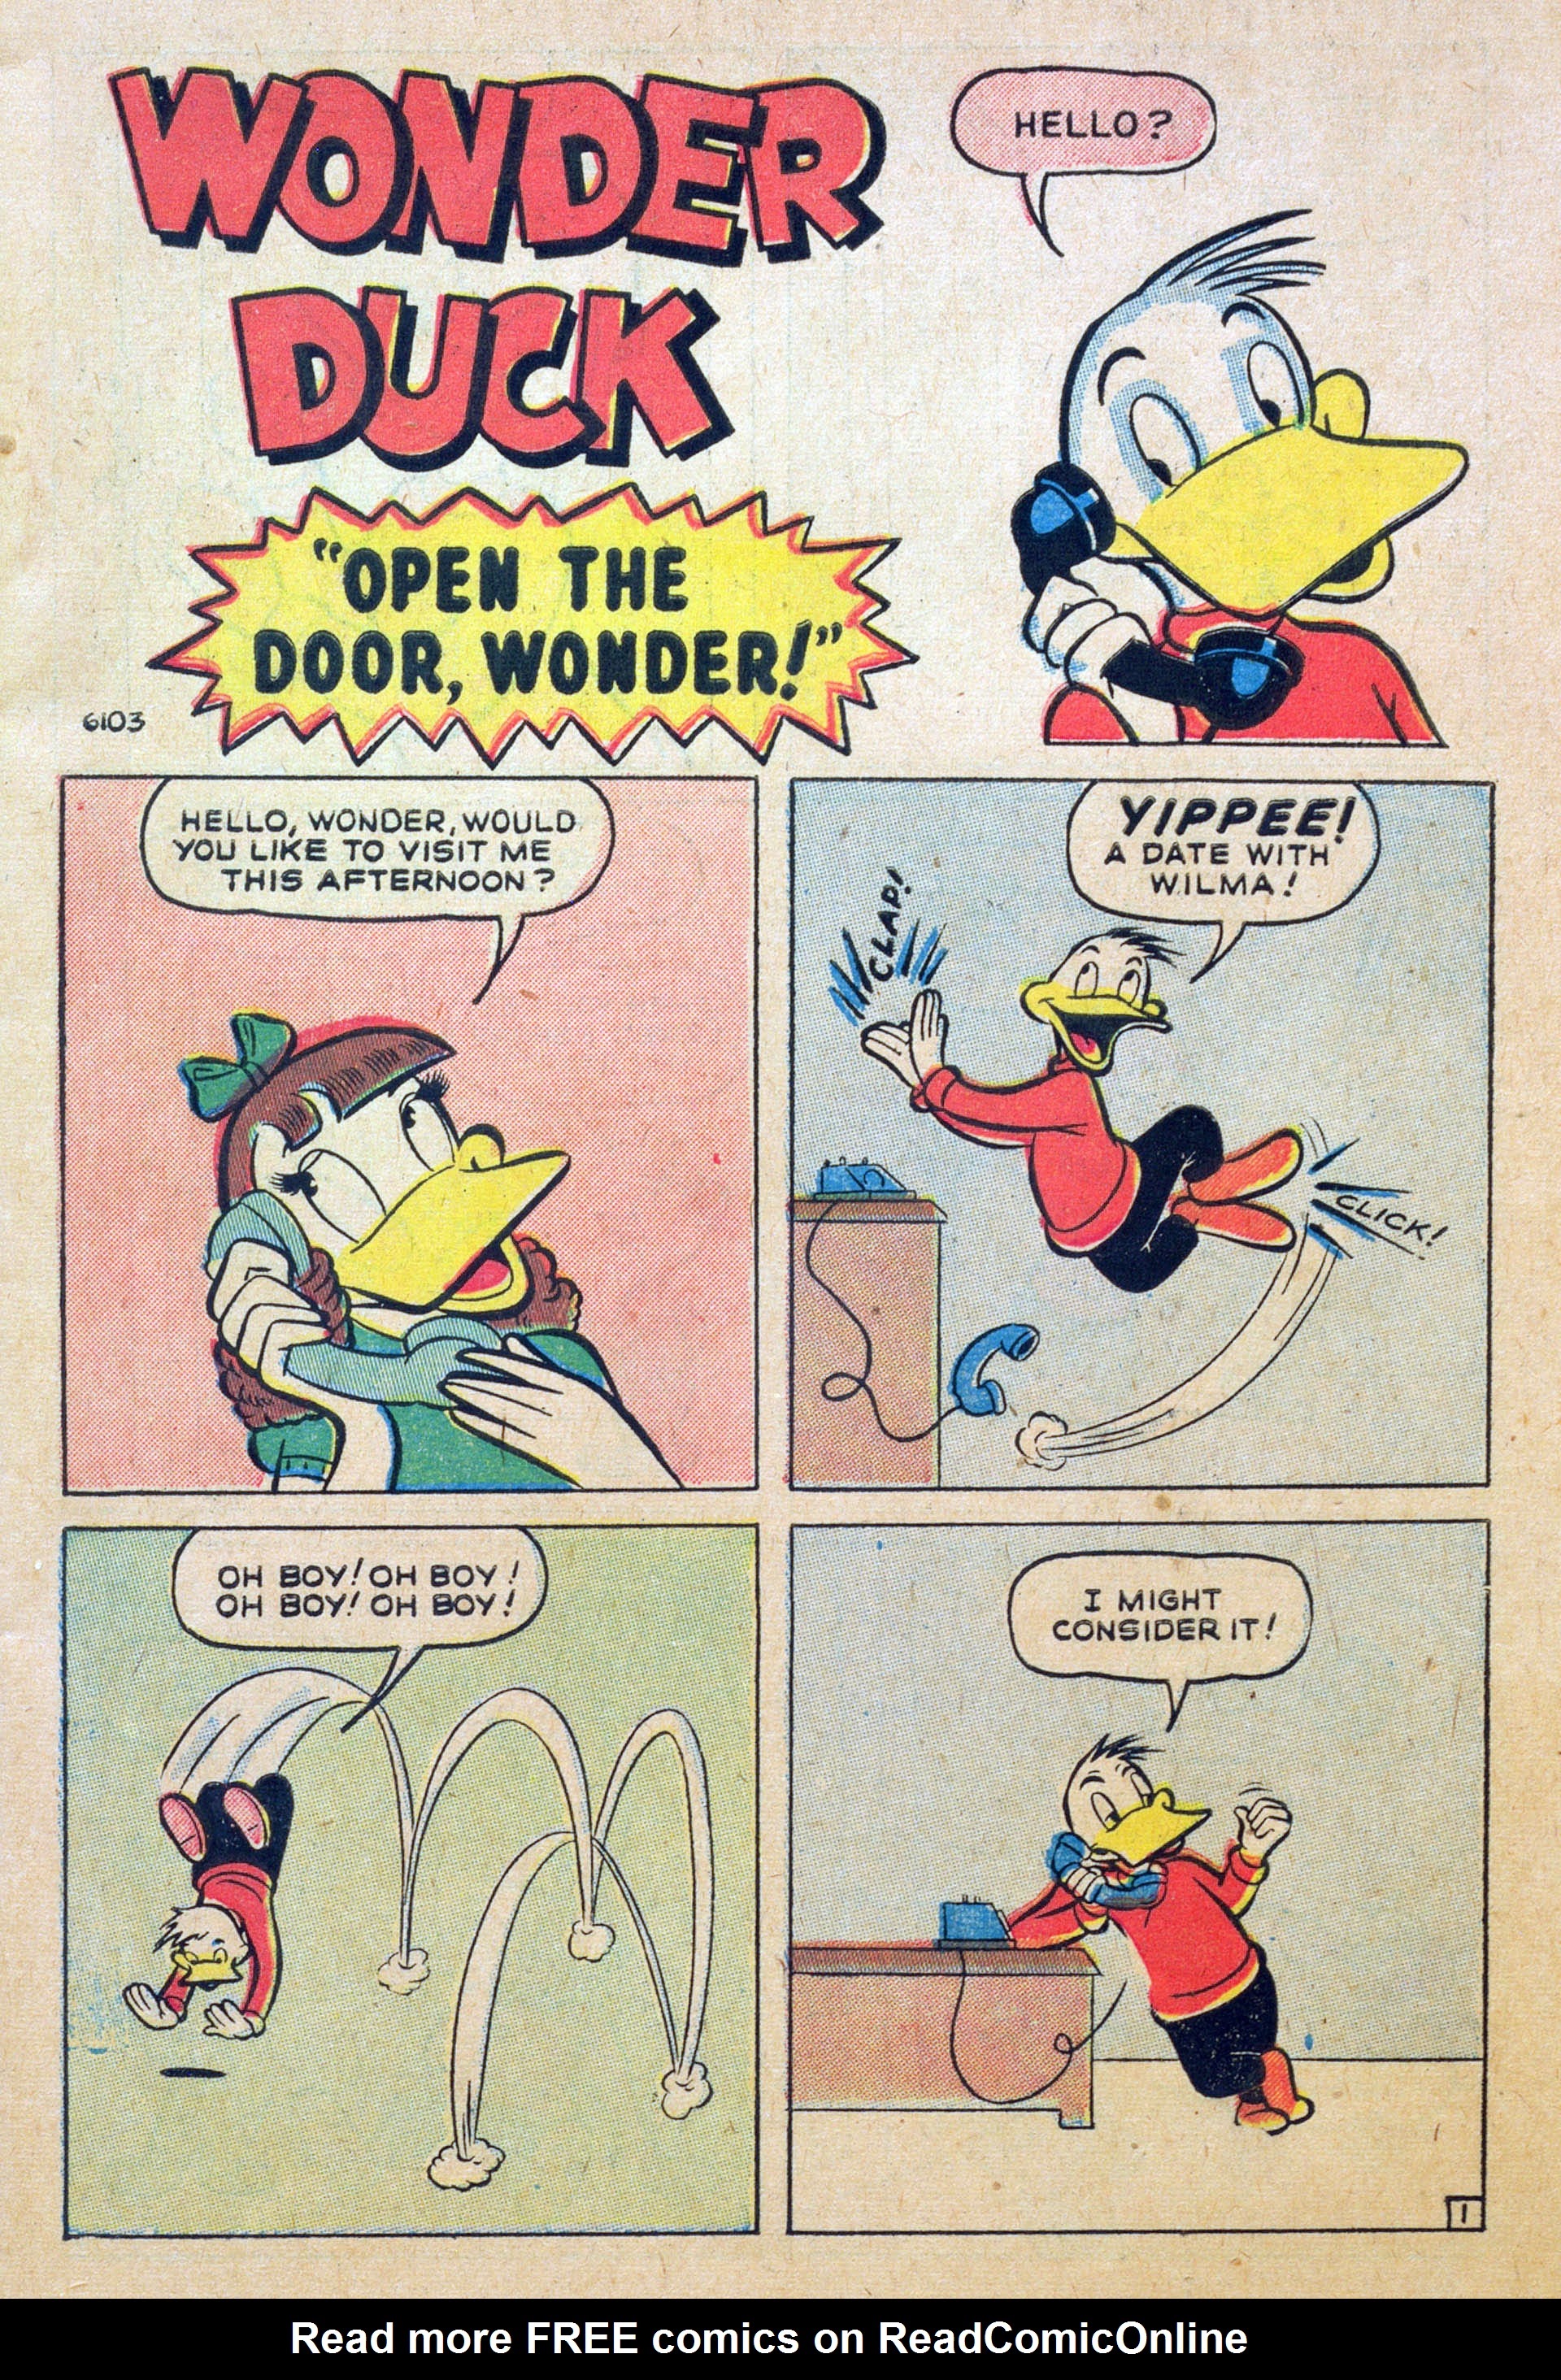 Read online Wonder Duck comic -  Issue #1 - 3